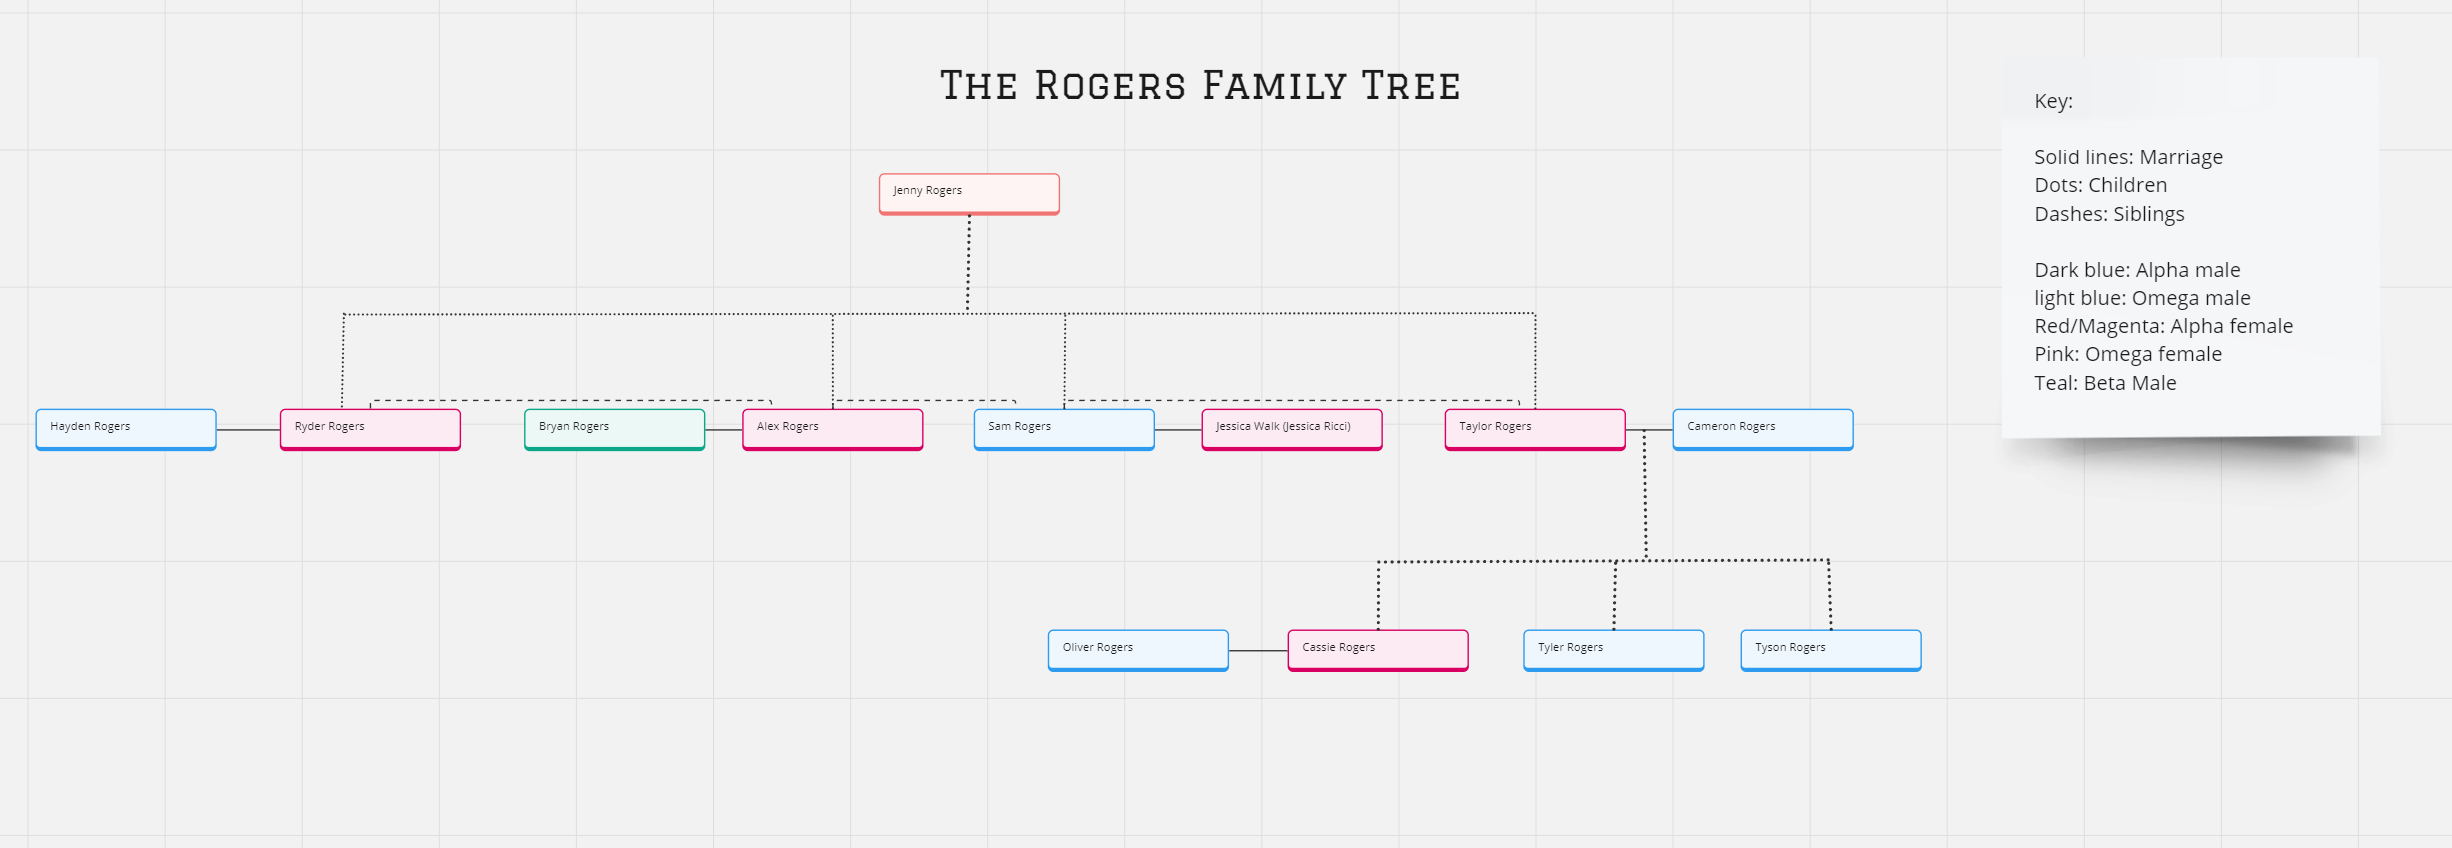 Rogers Family Tree